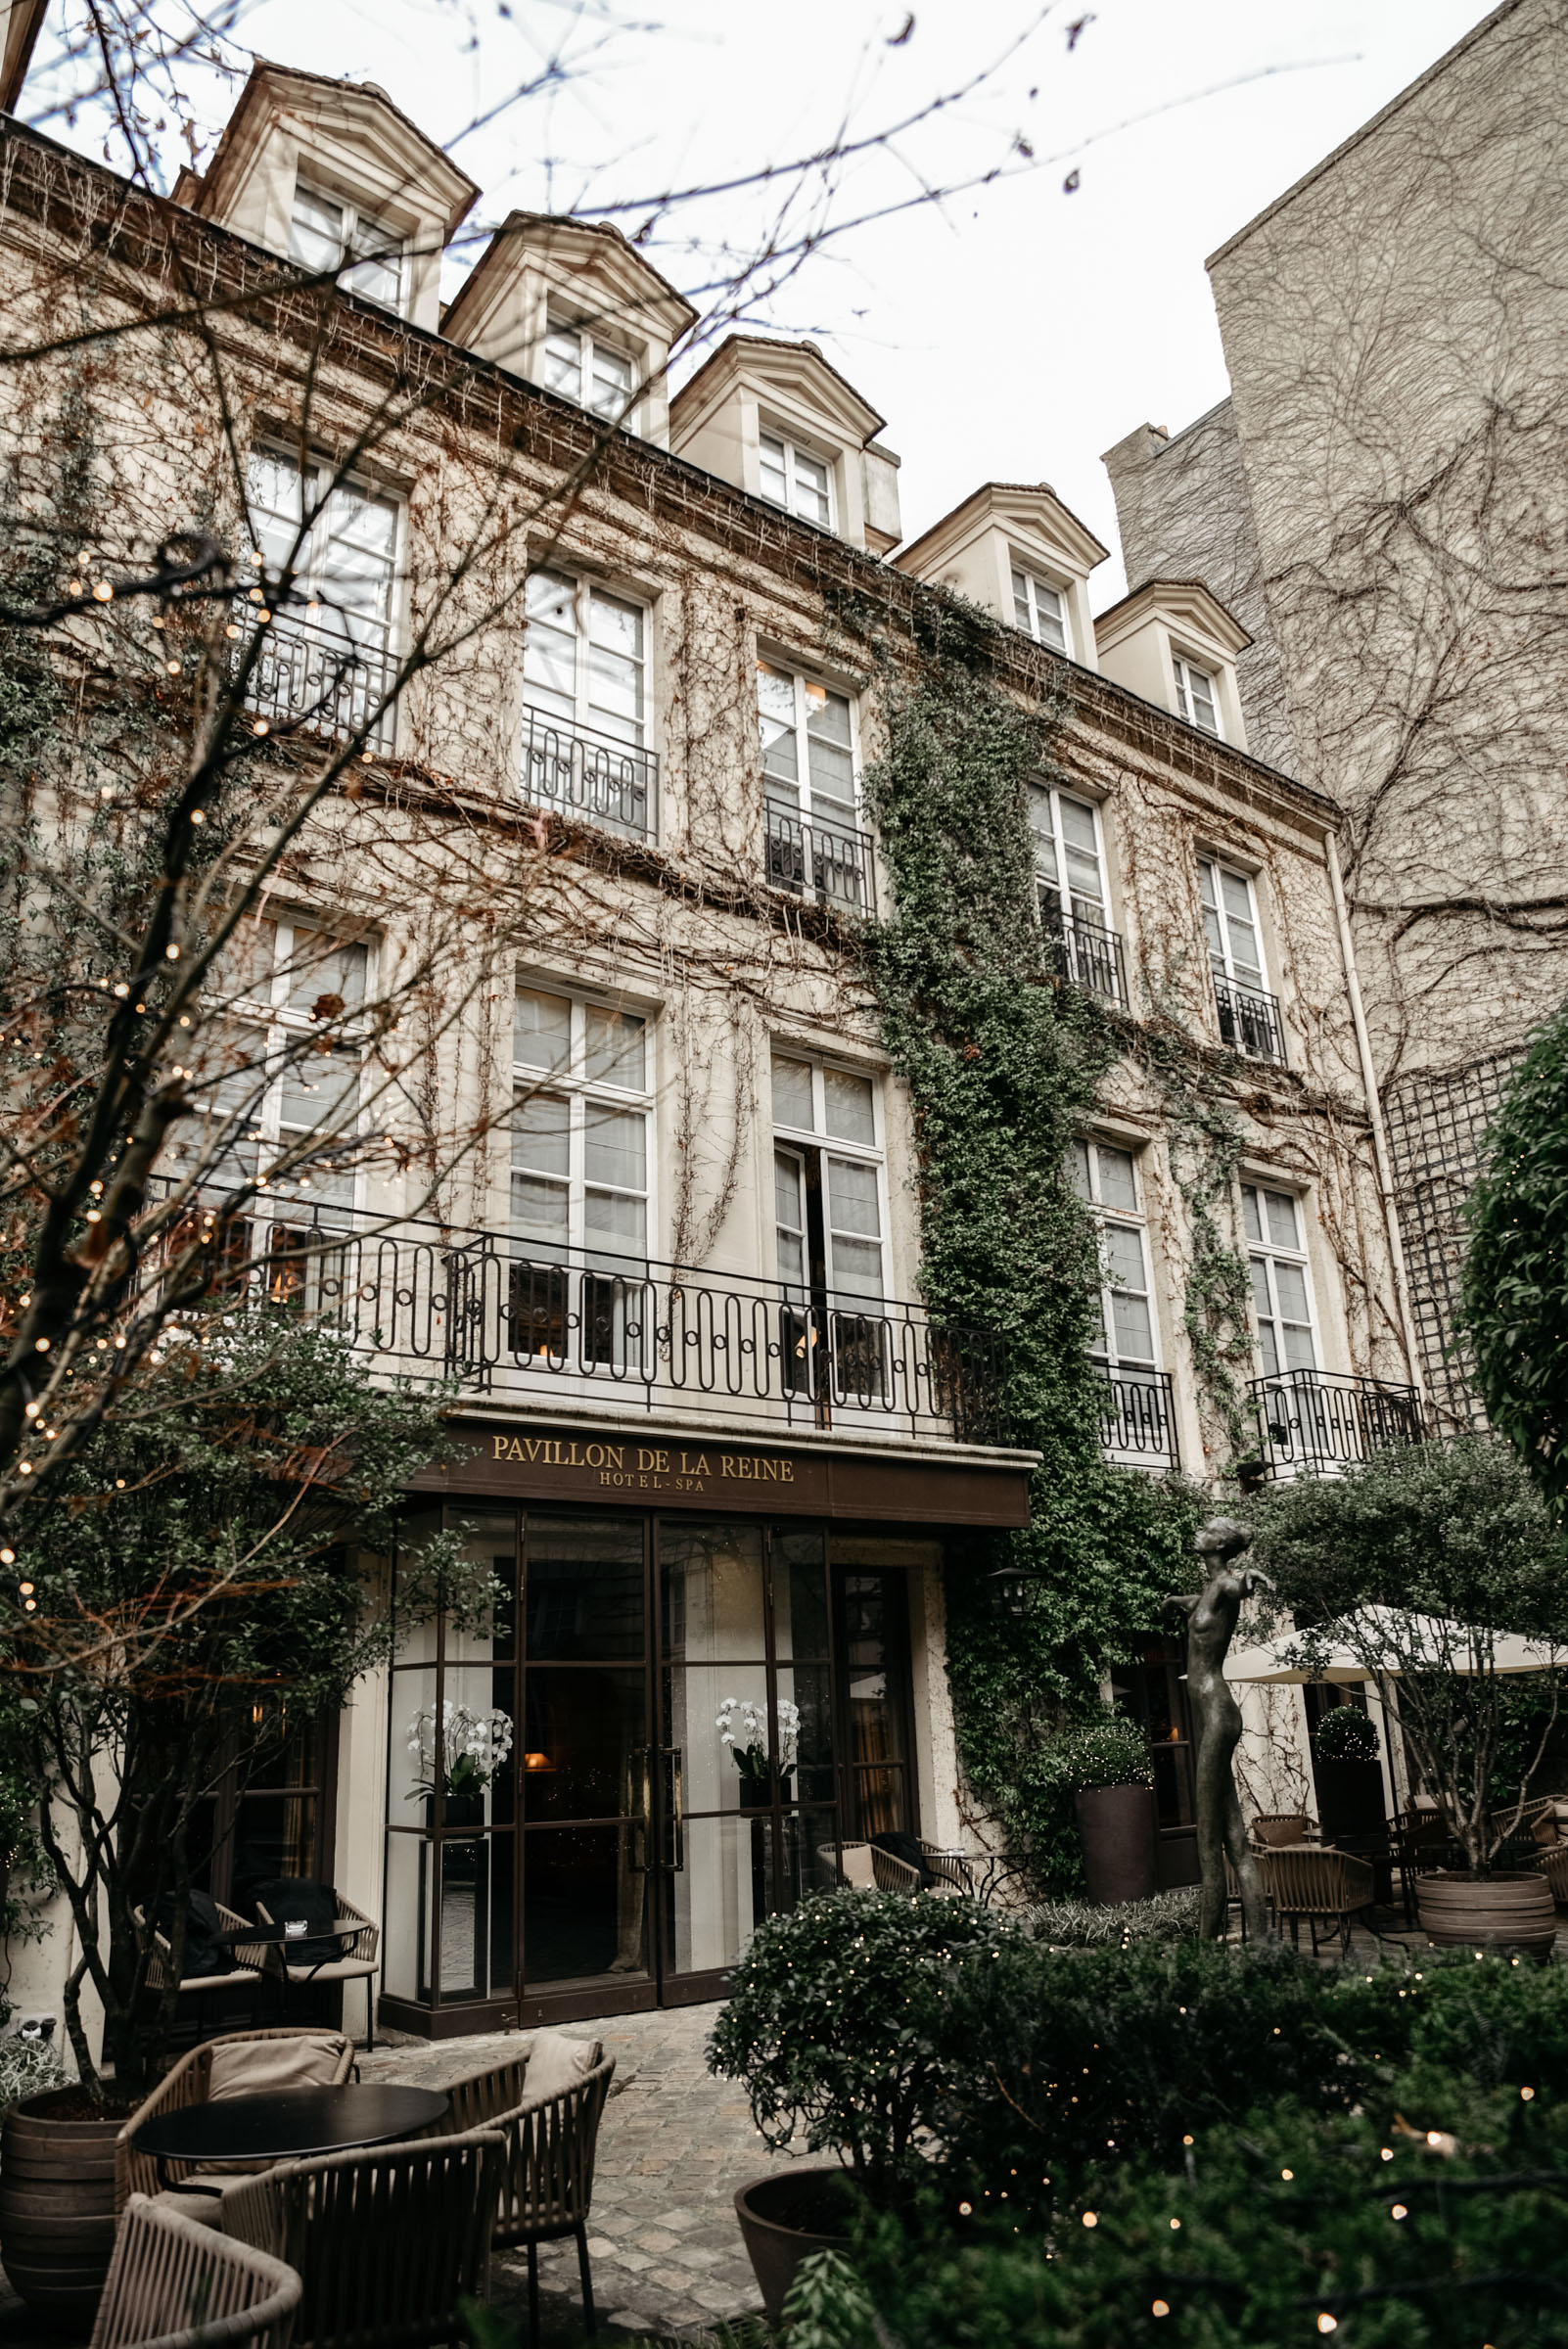 Tommeezjerry-Lifestyleblog-Fashionblog-Maennermodeblog-Maennerblog-Modeblog-Hotel-Review-Pavillon-De-La-Reine-Small-Luxury-Hotels-Travel-Paris-City-Architecture